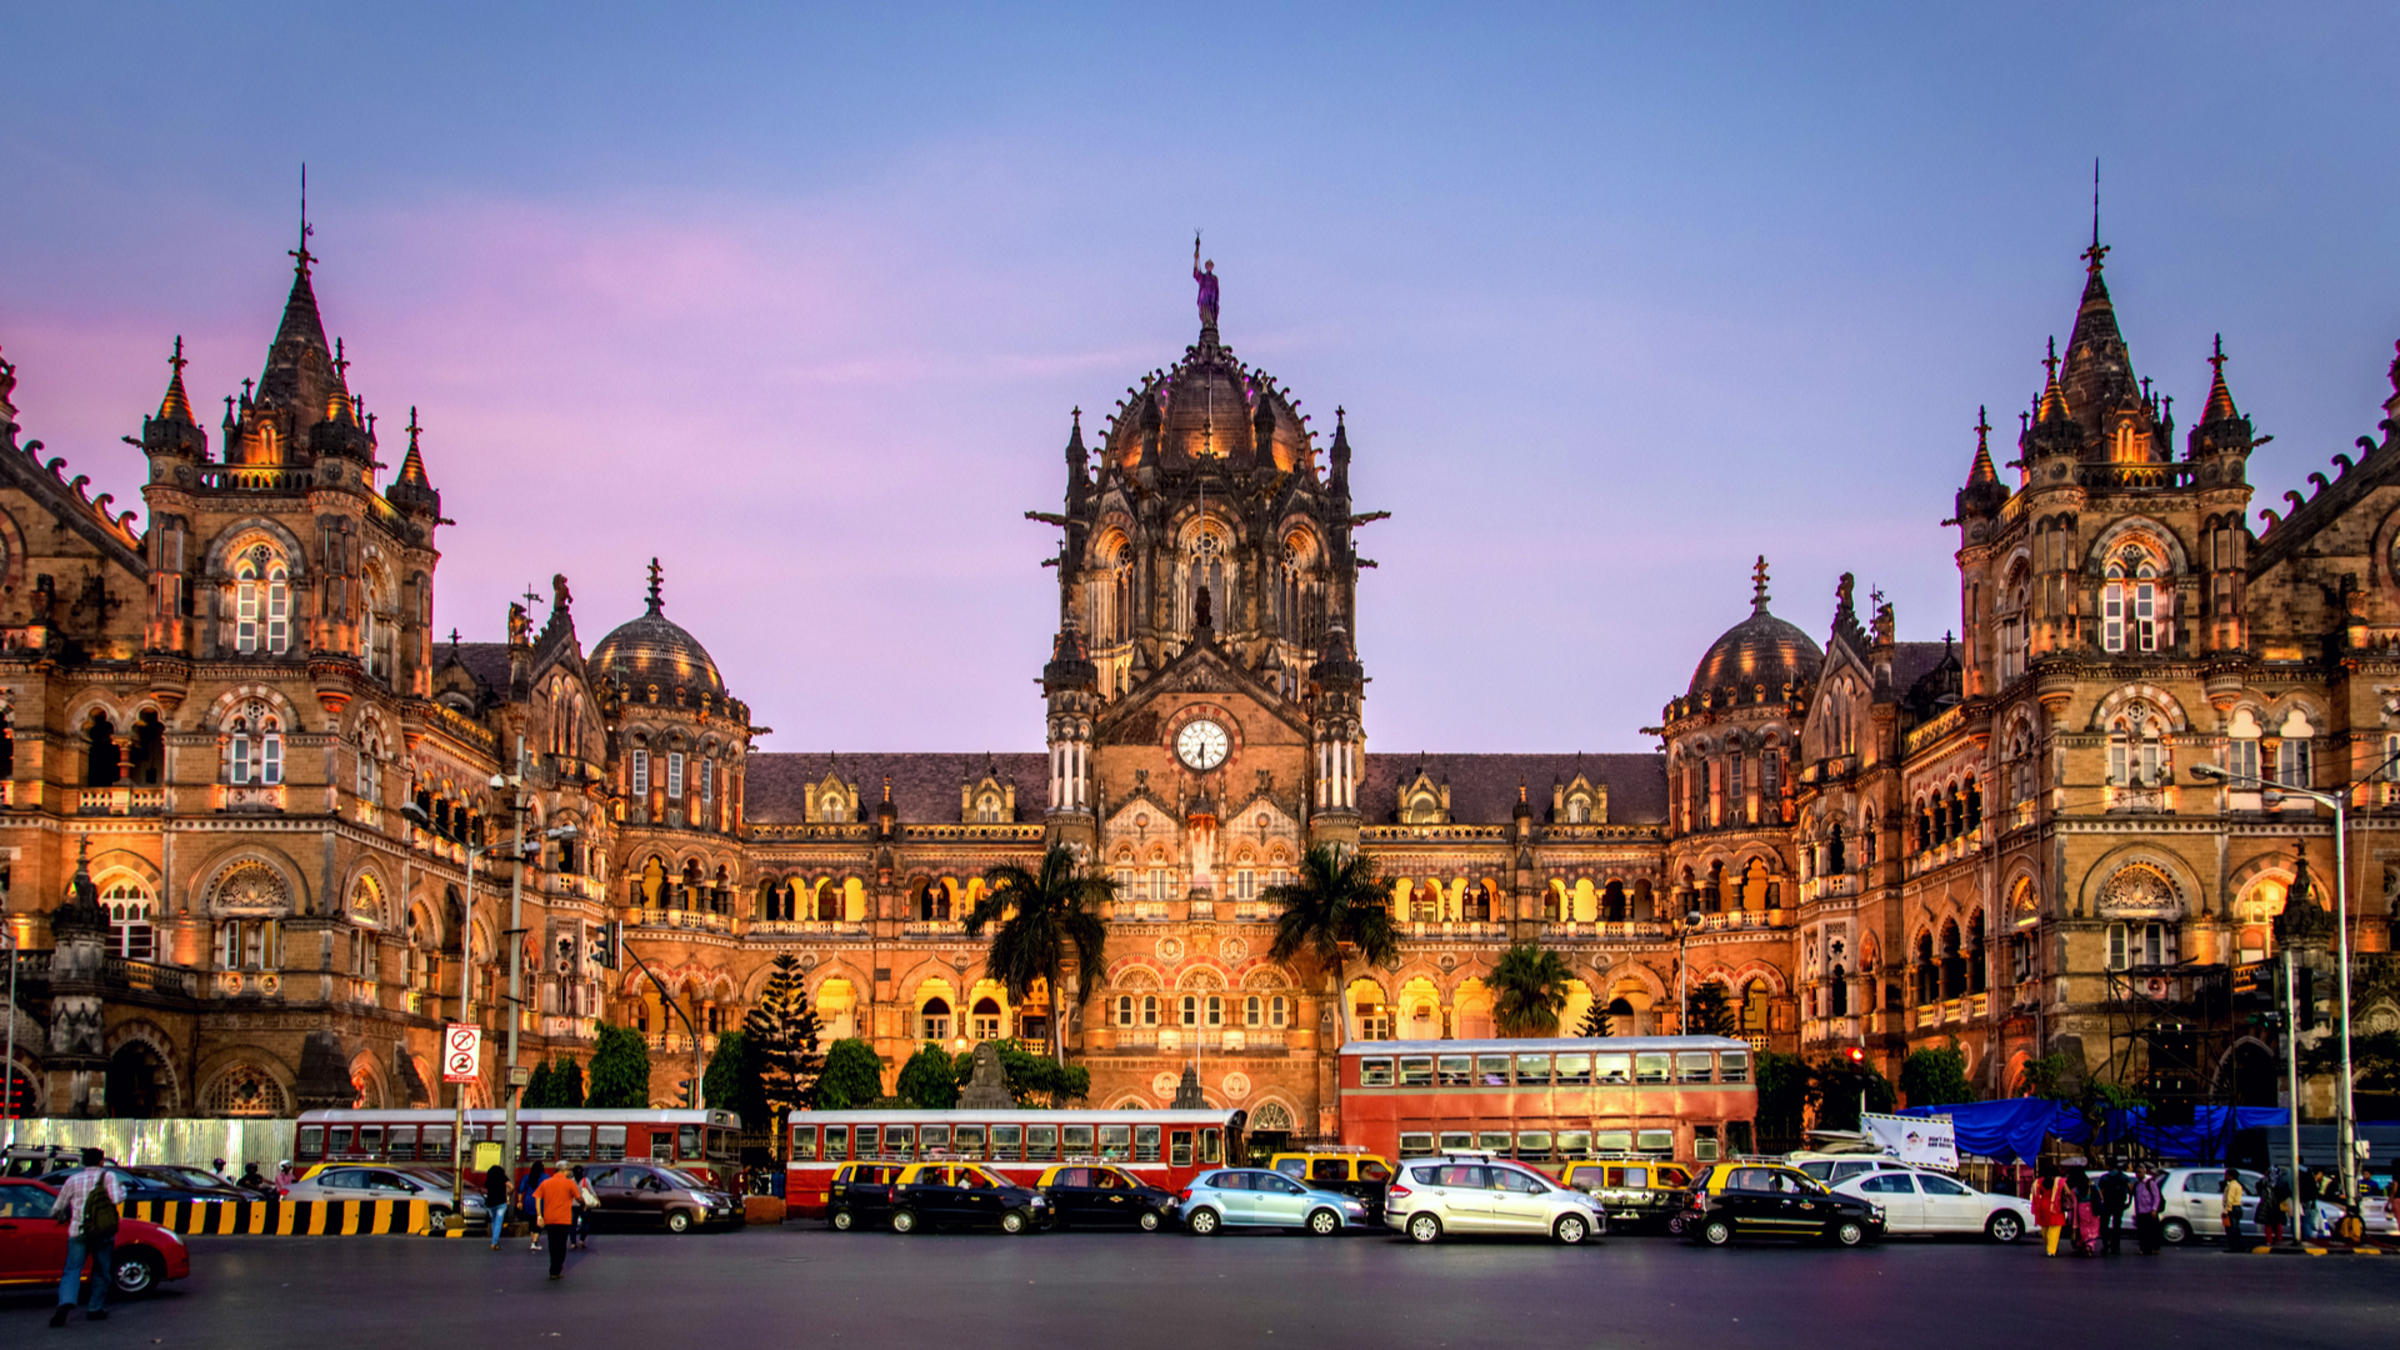 Chhatrapati Shivati Terminus, Mumbai